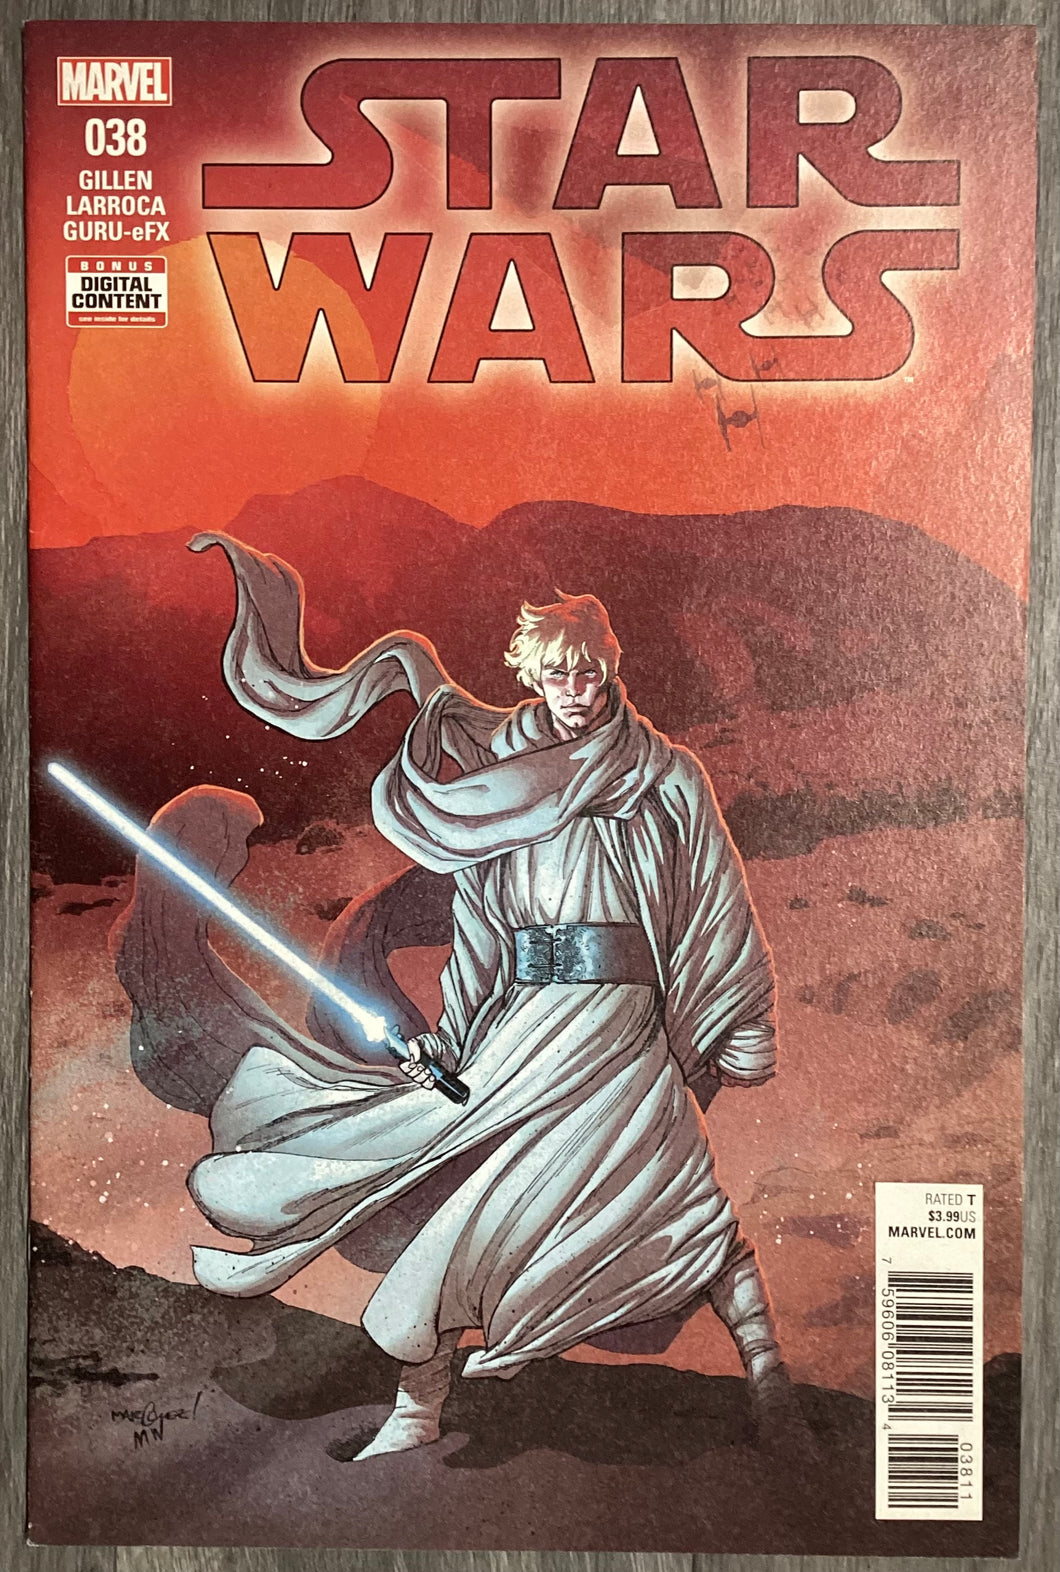 Star Wars No. #38 2018 Marvel Comics